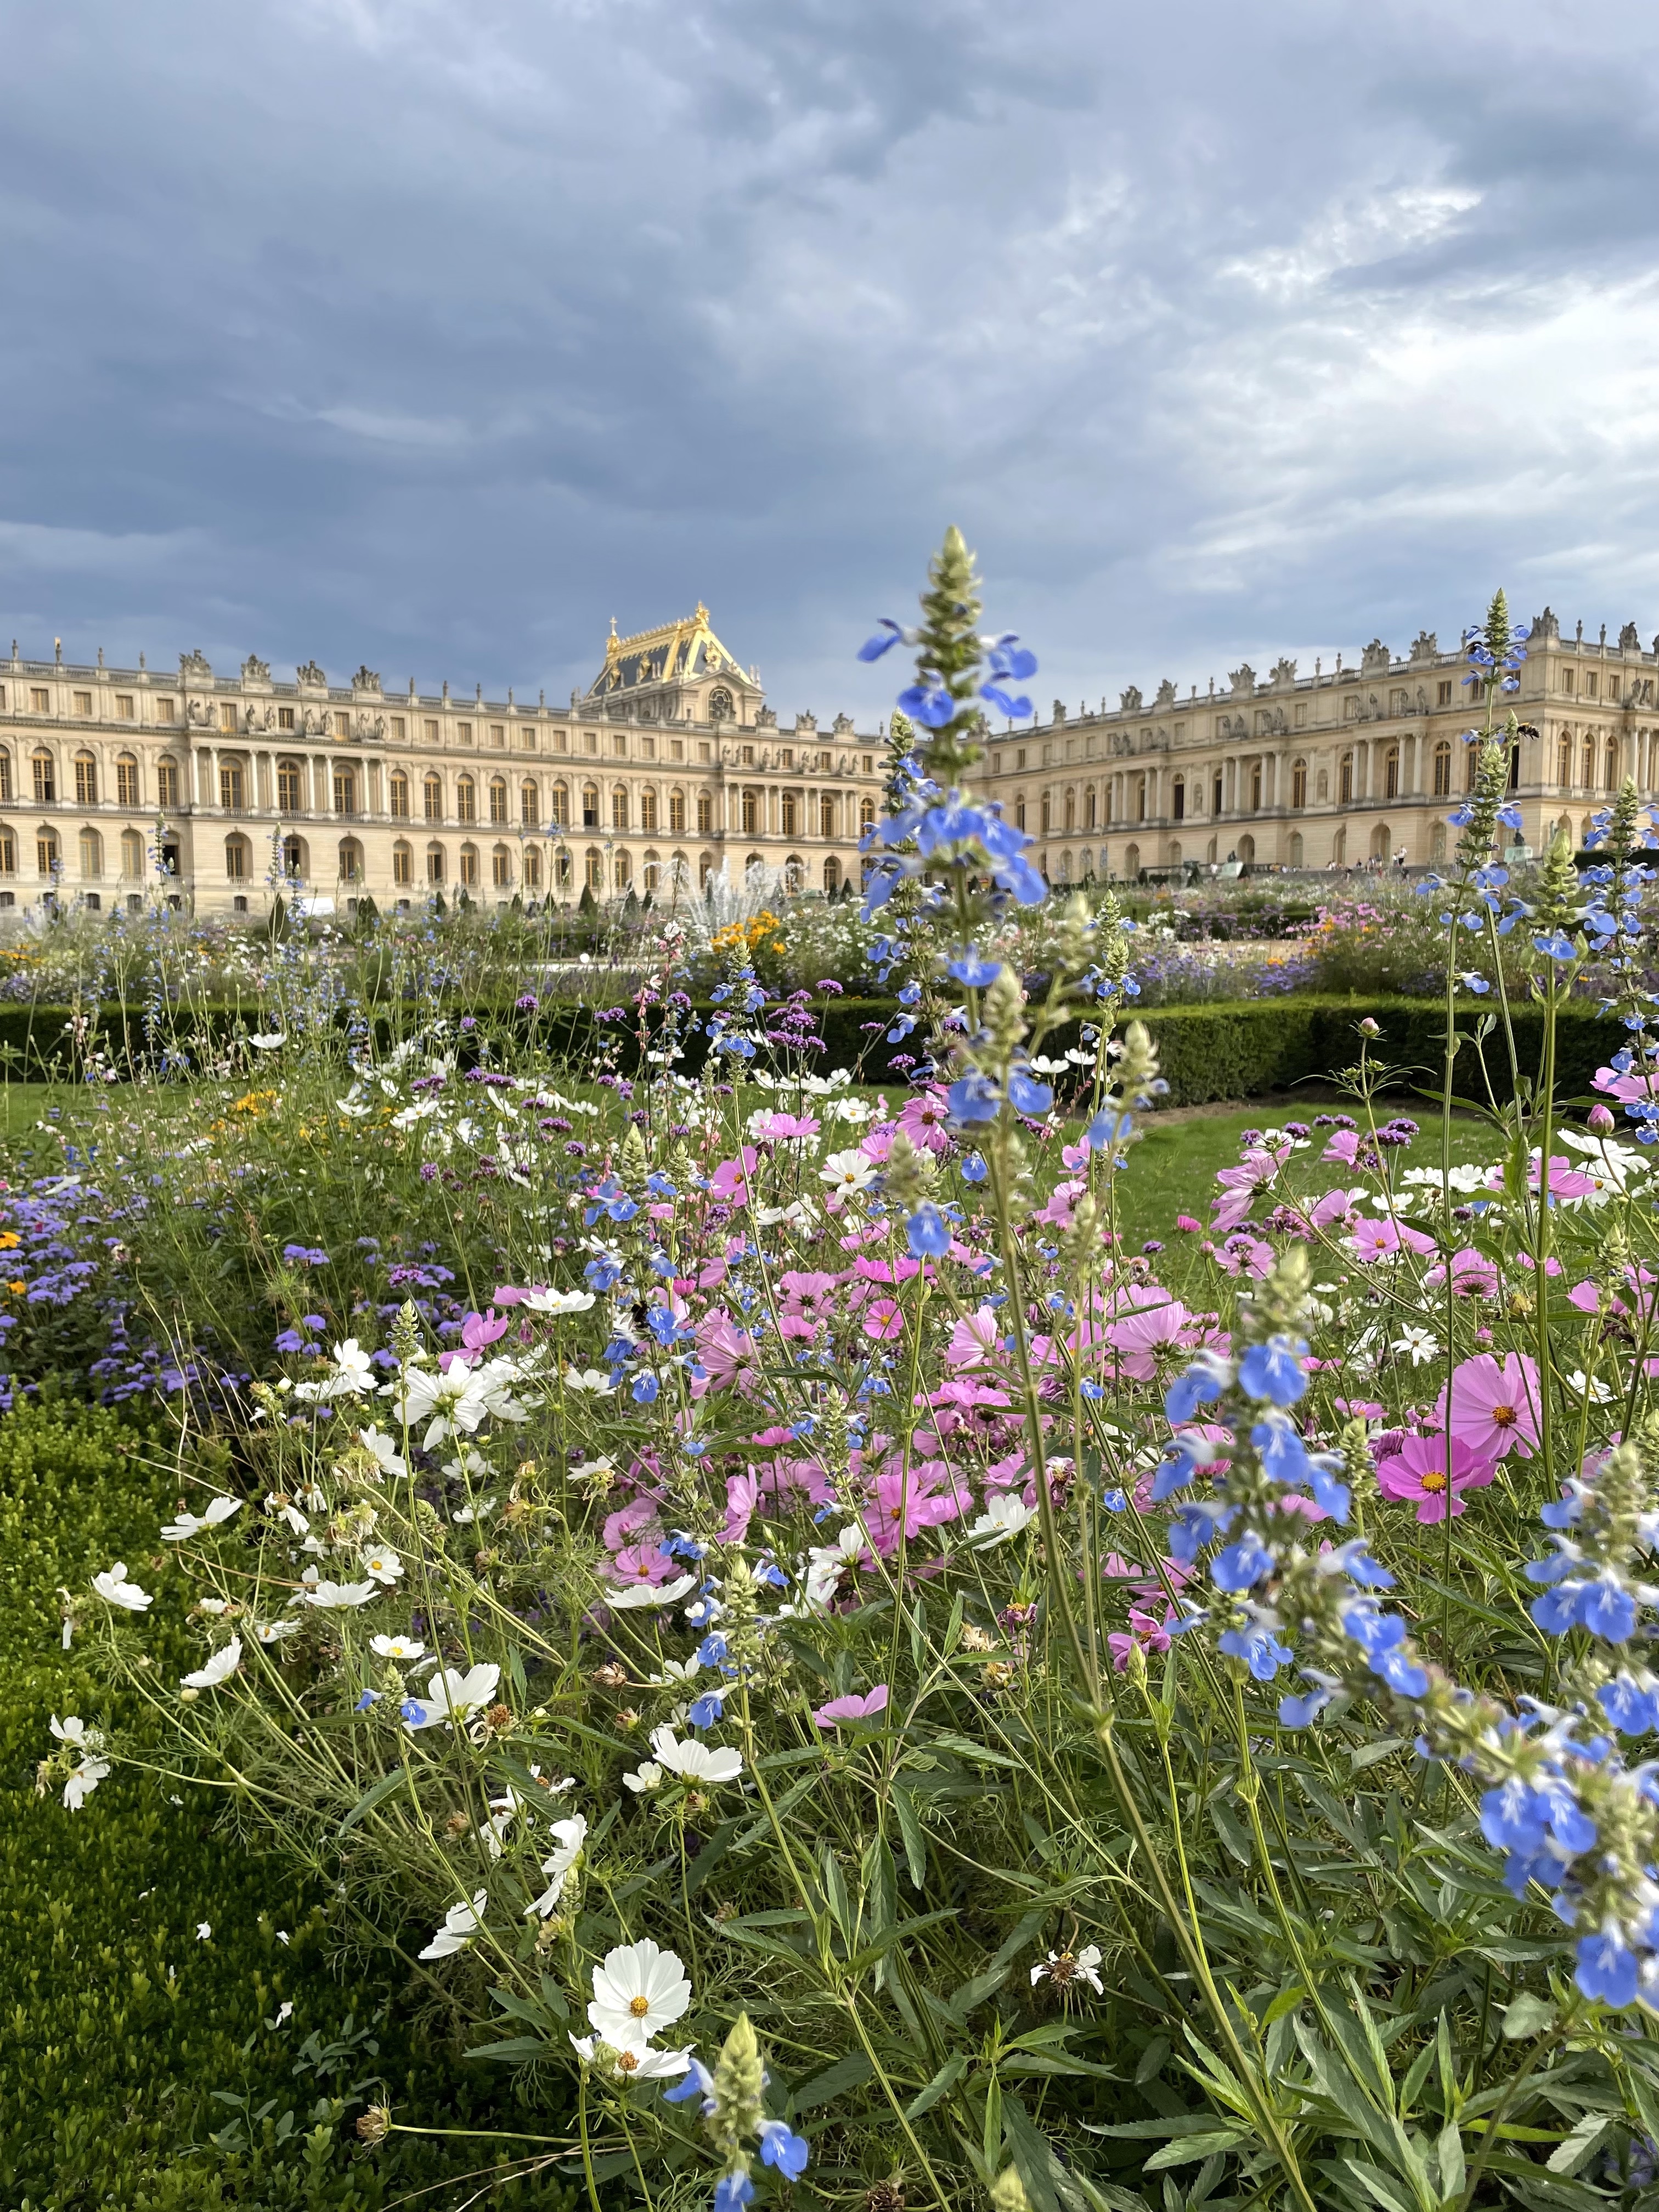 Versailles gardens as seen from a golf cart